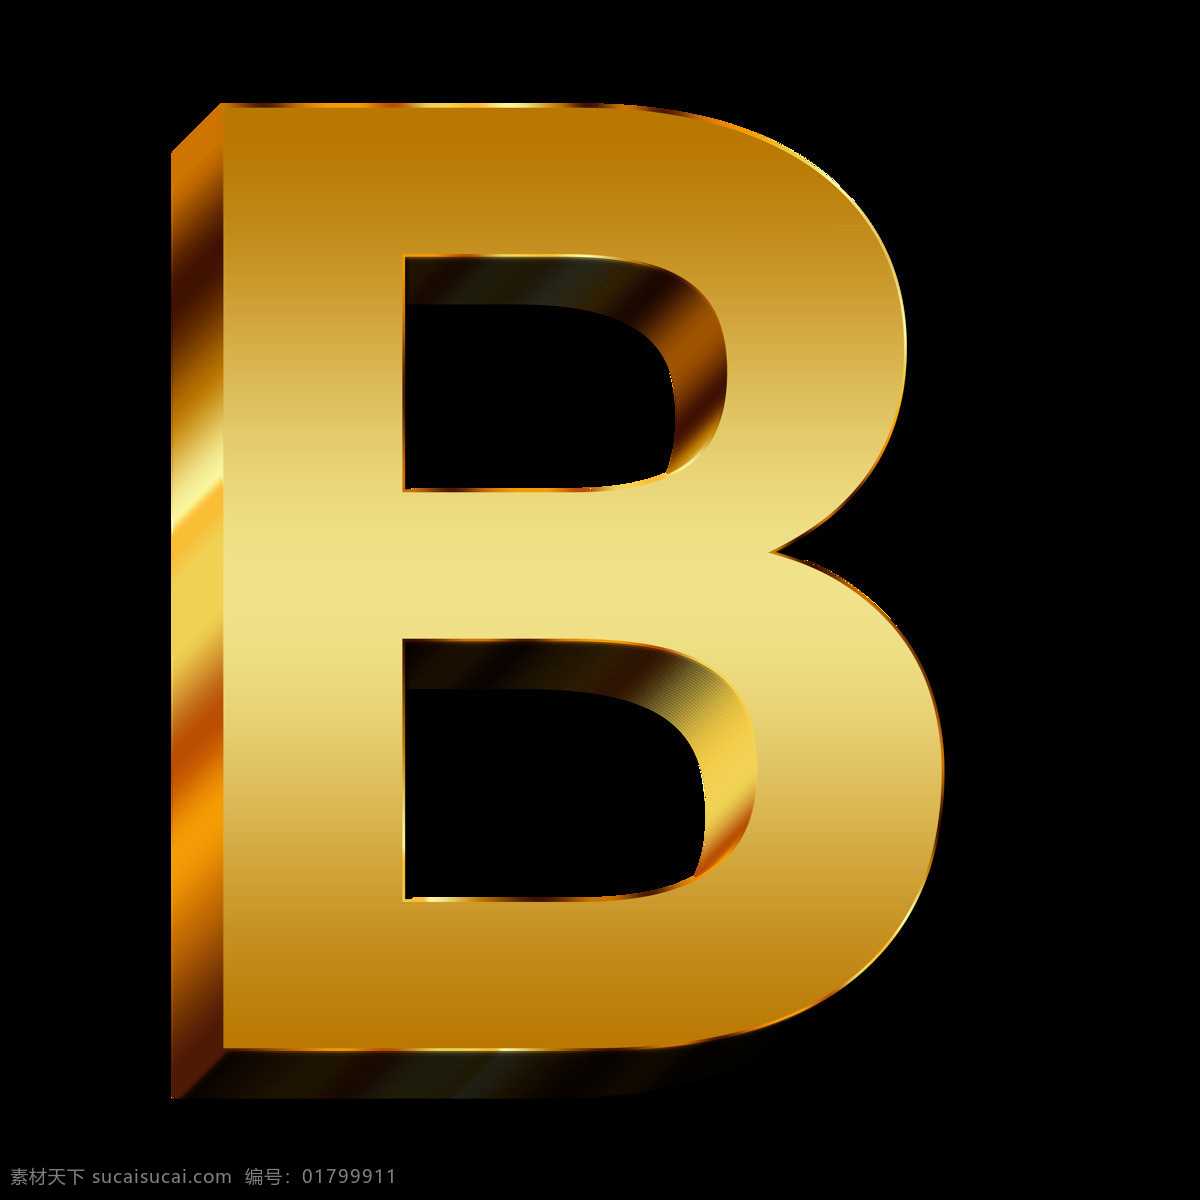 字母b图片 字母b 教育 黄金 金 字母 培训 本书 通讯 学习 立体字母